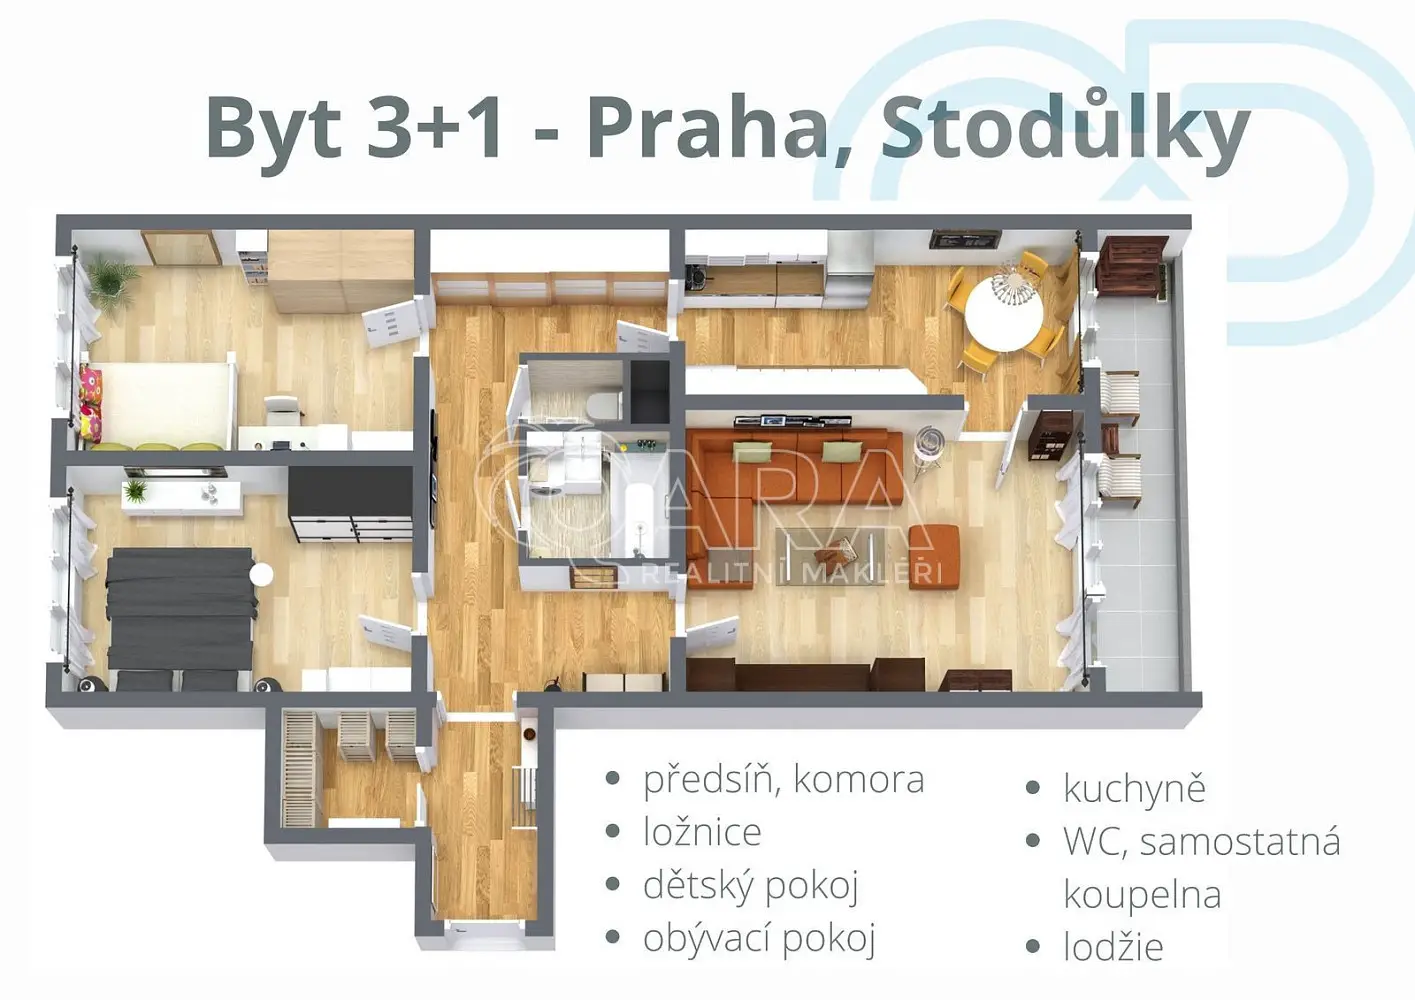 Mezi školami, Praha 5 - Stodůlky